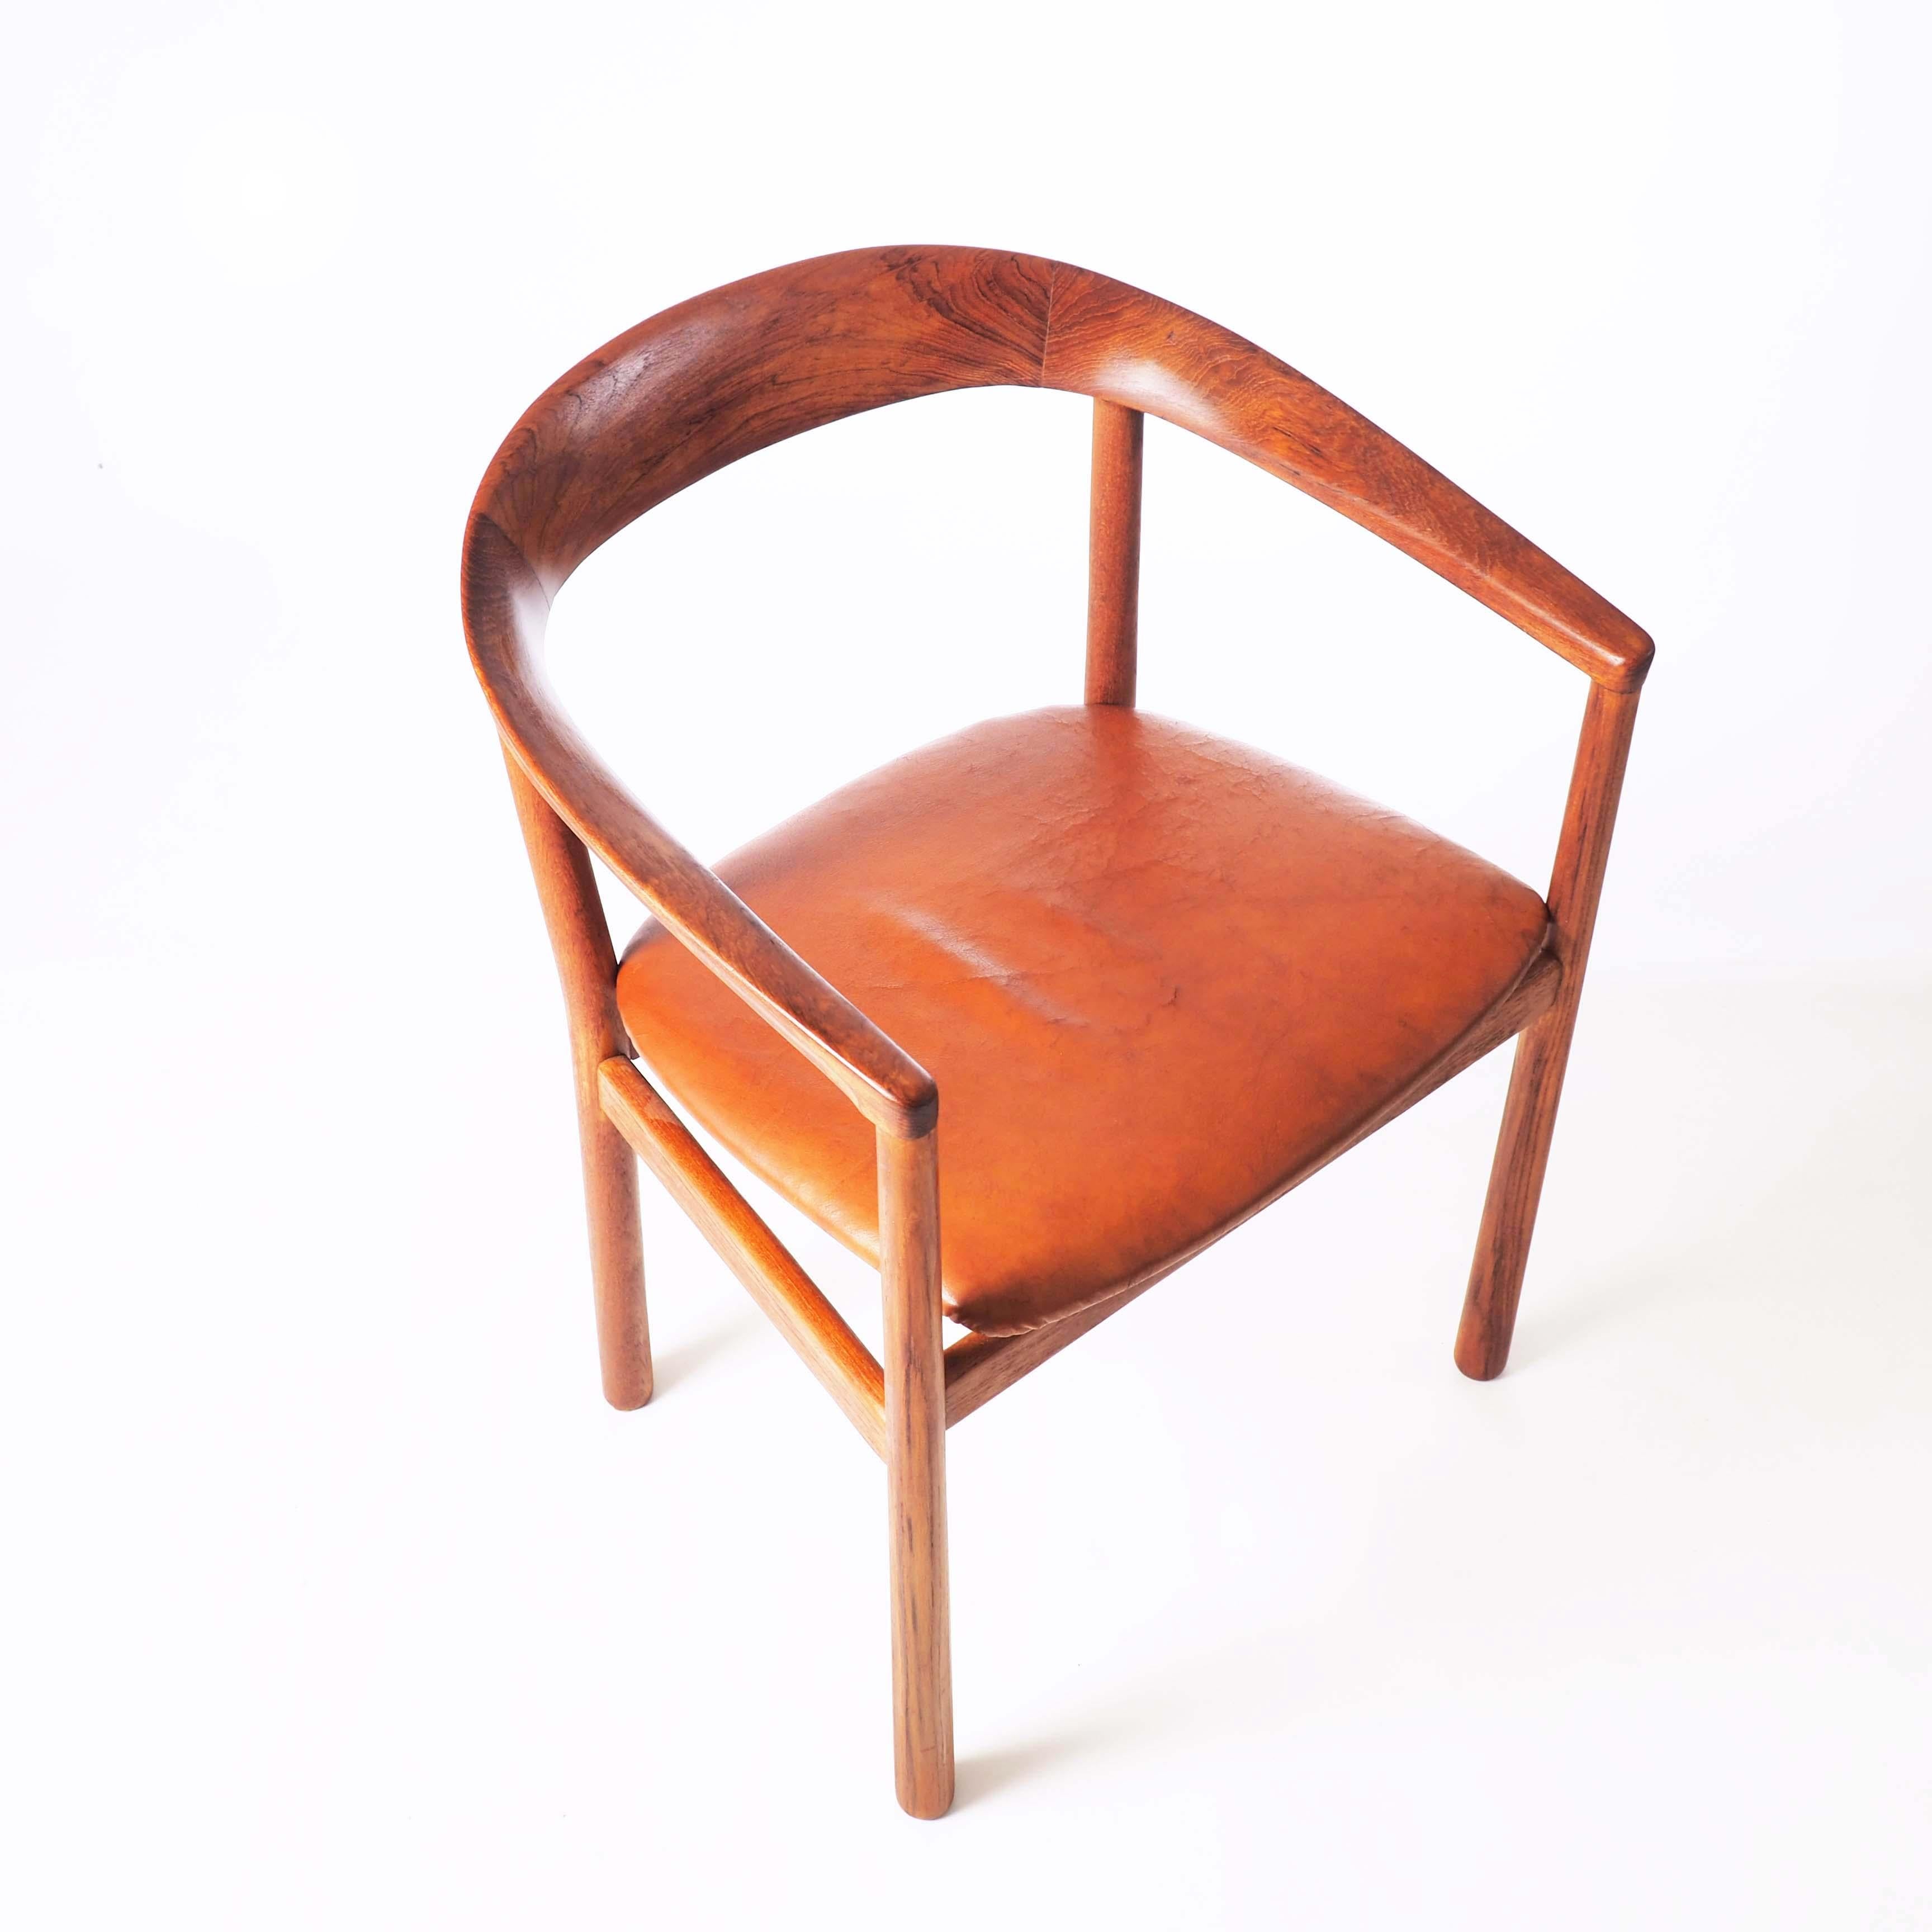 Dieser stilvolle Stuhl wurde 1959 von Carl-Axel Acking für die schwedische Botschaft in Tokio entworfen. Dieses Stück ist aus massivem Teakholz und natürlichem Leder.